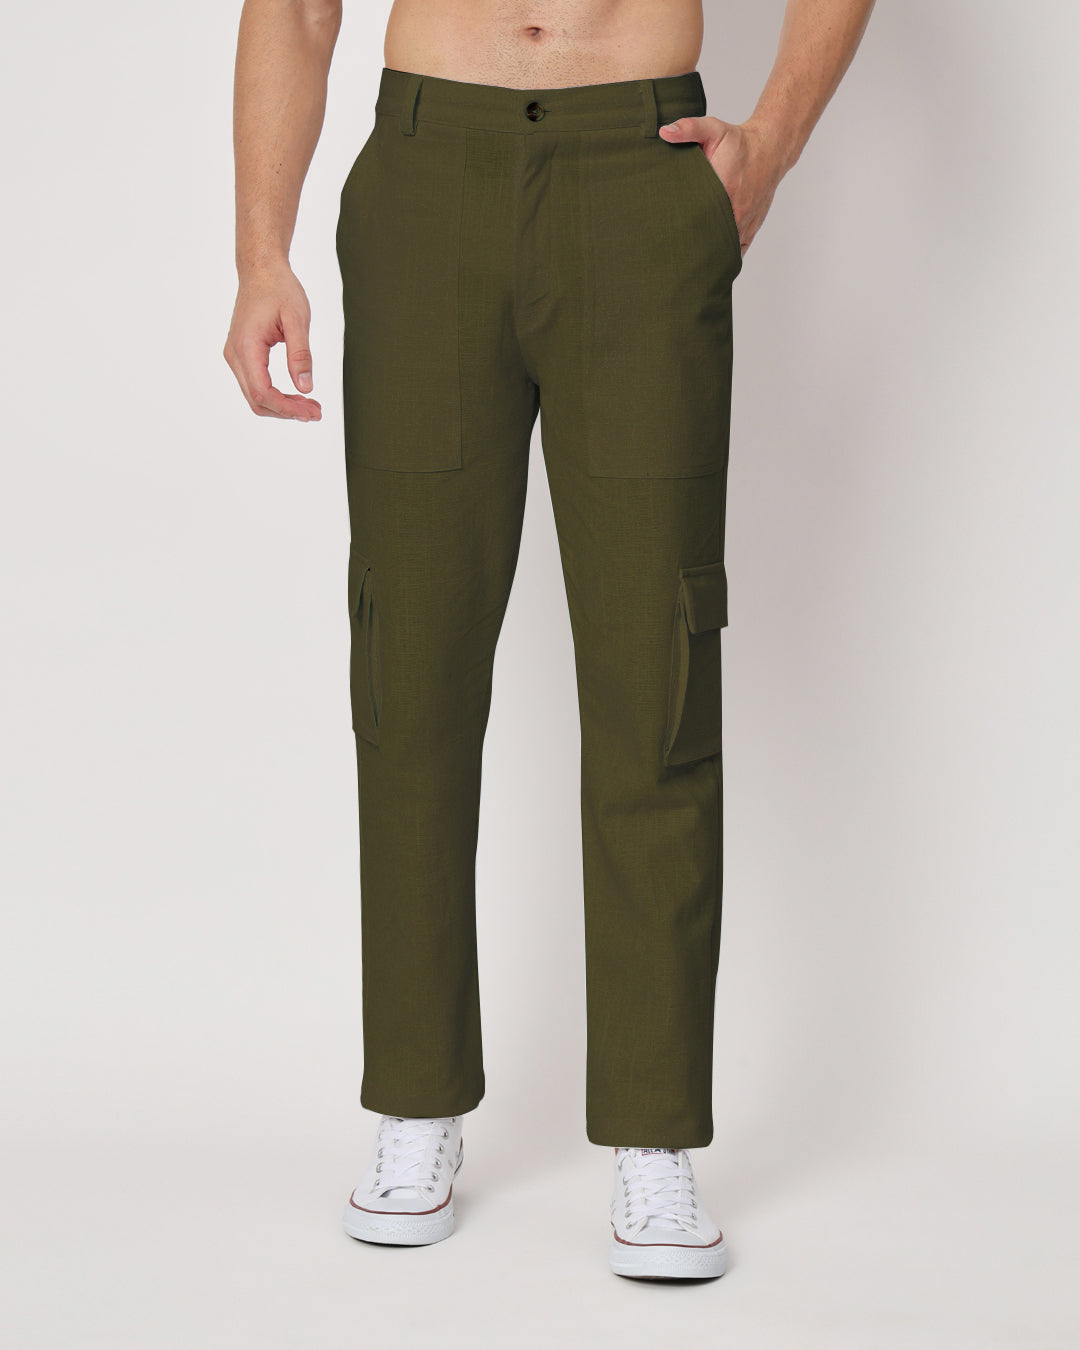 Combo: Function Flex Beige & Olive Green Men's Pants- Set Of 2